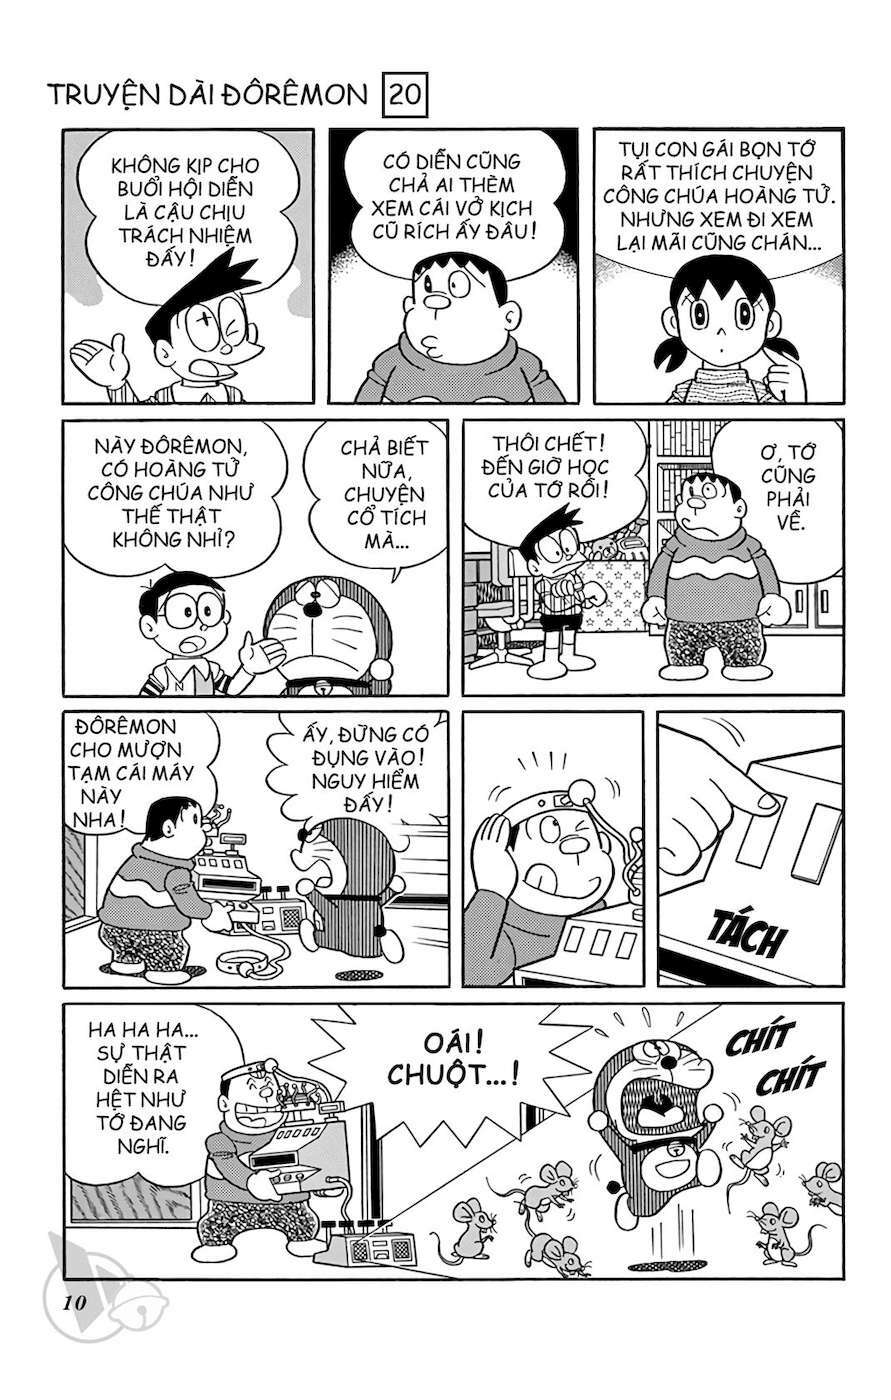 Truyện Tranh Doraemon: Truyền Thuyết Về Vua Mặt Trời Nôbita trang 9